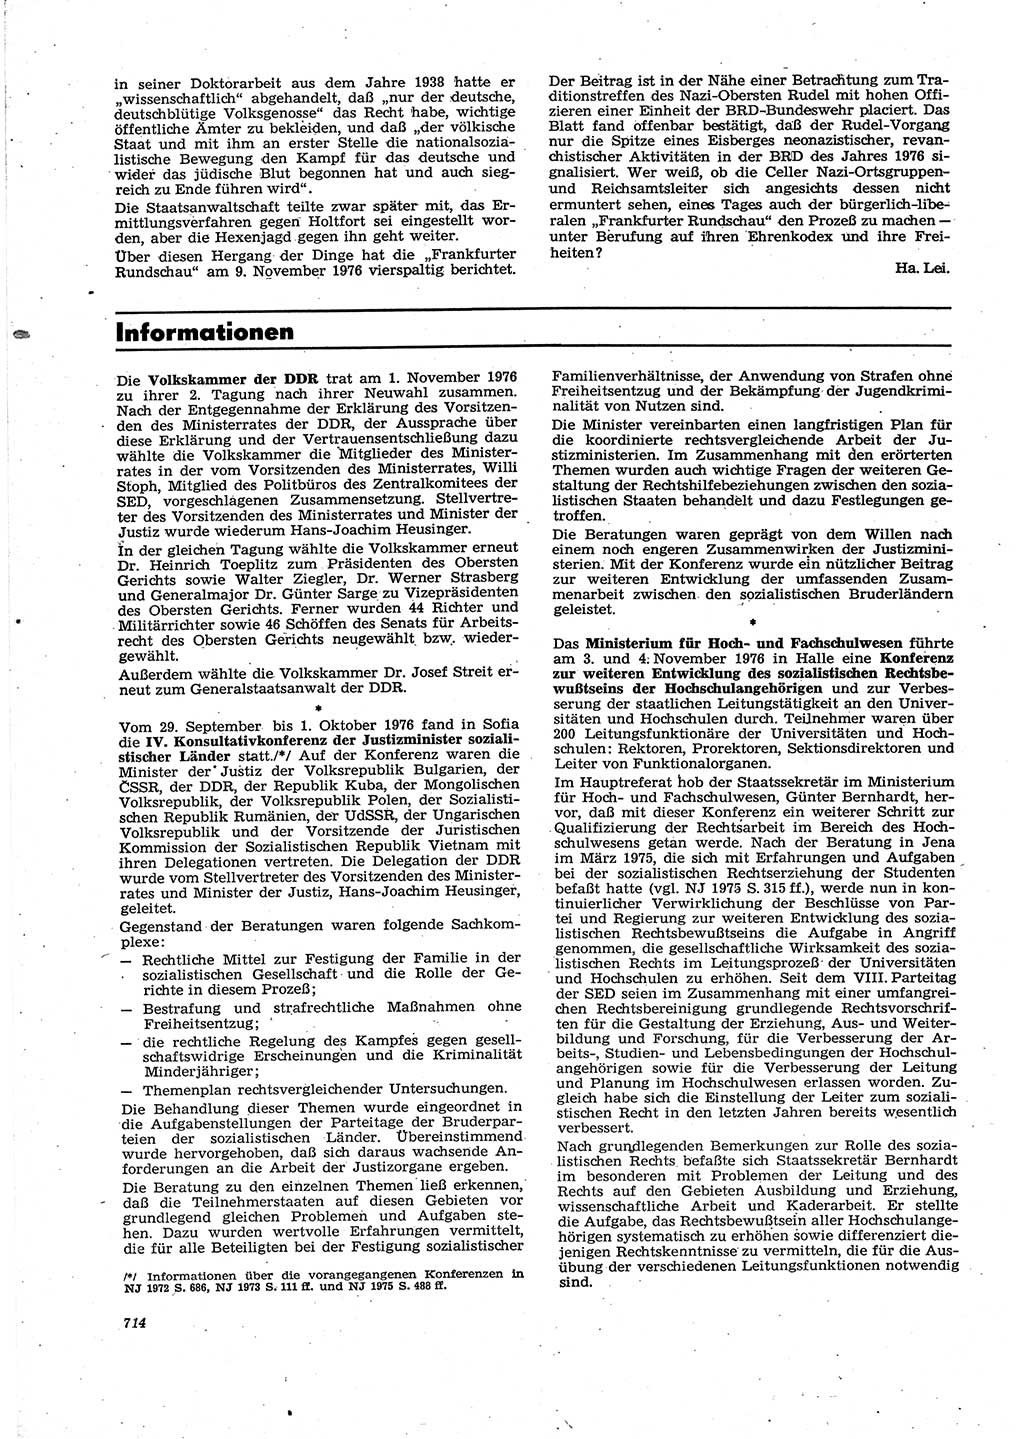 Neue Justiz (NJ), Zeitschrift für Recht und Rechtswissenschaft [Deutsche Demokratische Republik (DDR)], 30. Jahrgang 1976, Seite 714 (NJ DDR 1976, S. 714)